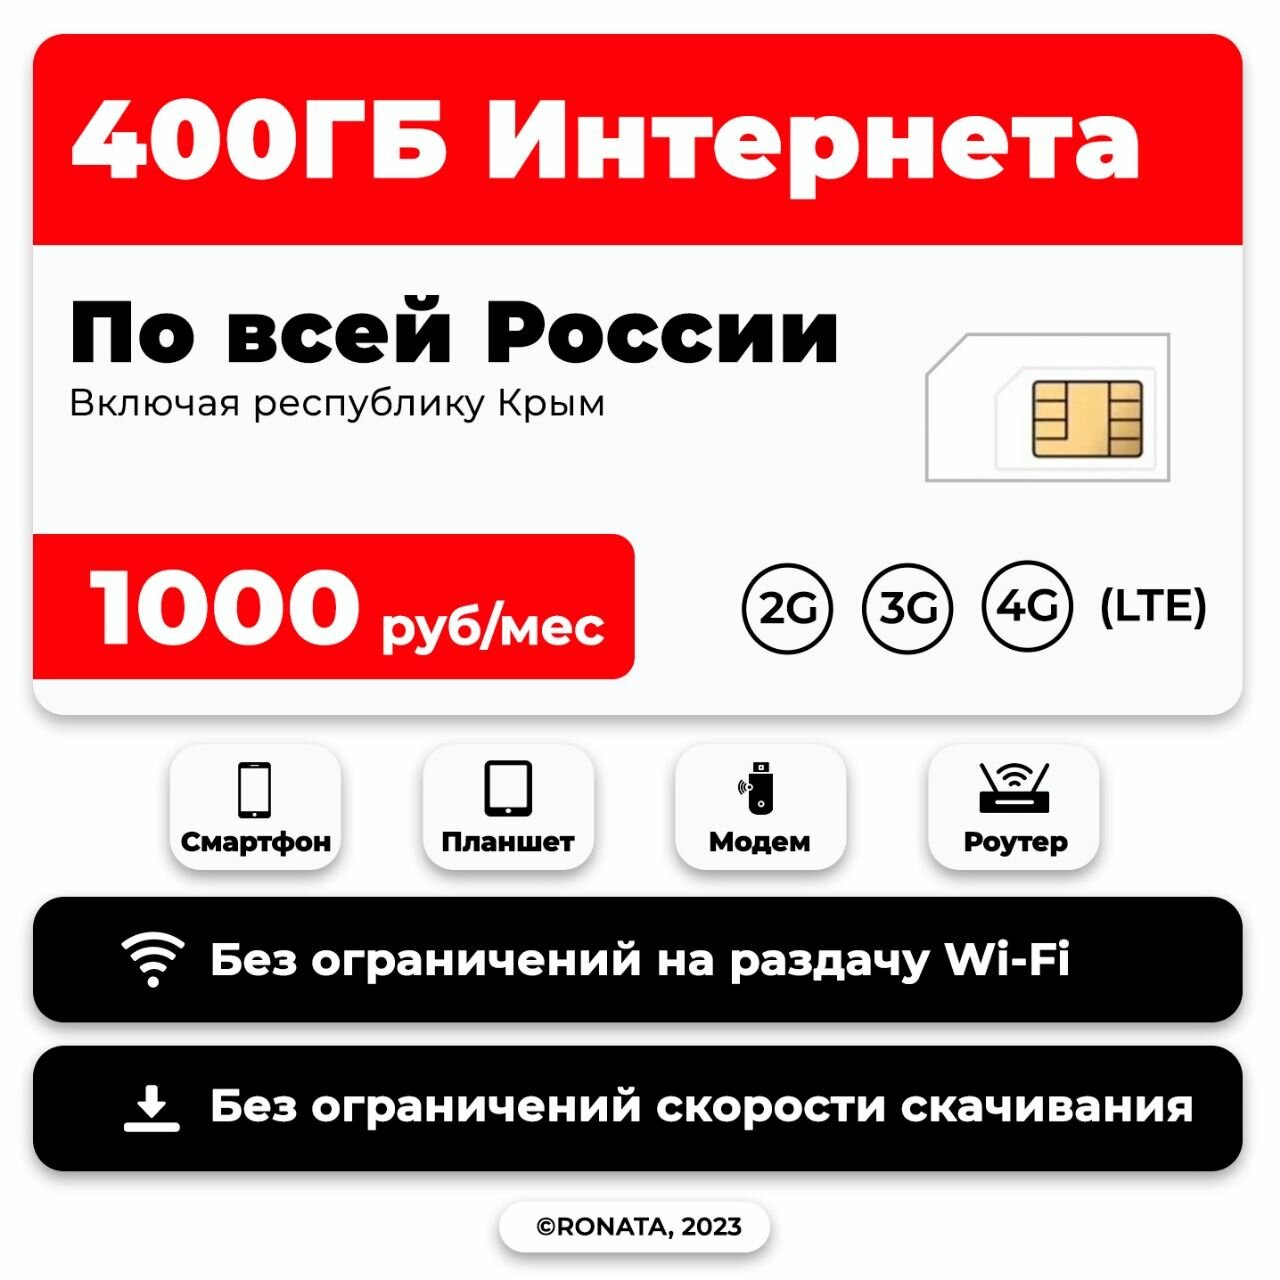 SIM-карты SIM-карта сим 400 ГБ за 1000 pуб/Мес по всей России включая Крым (Вся Россия)